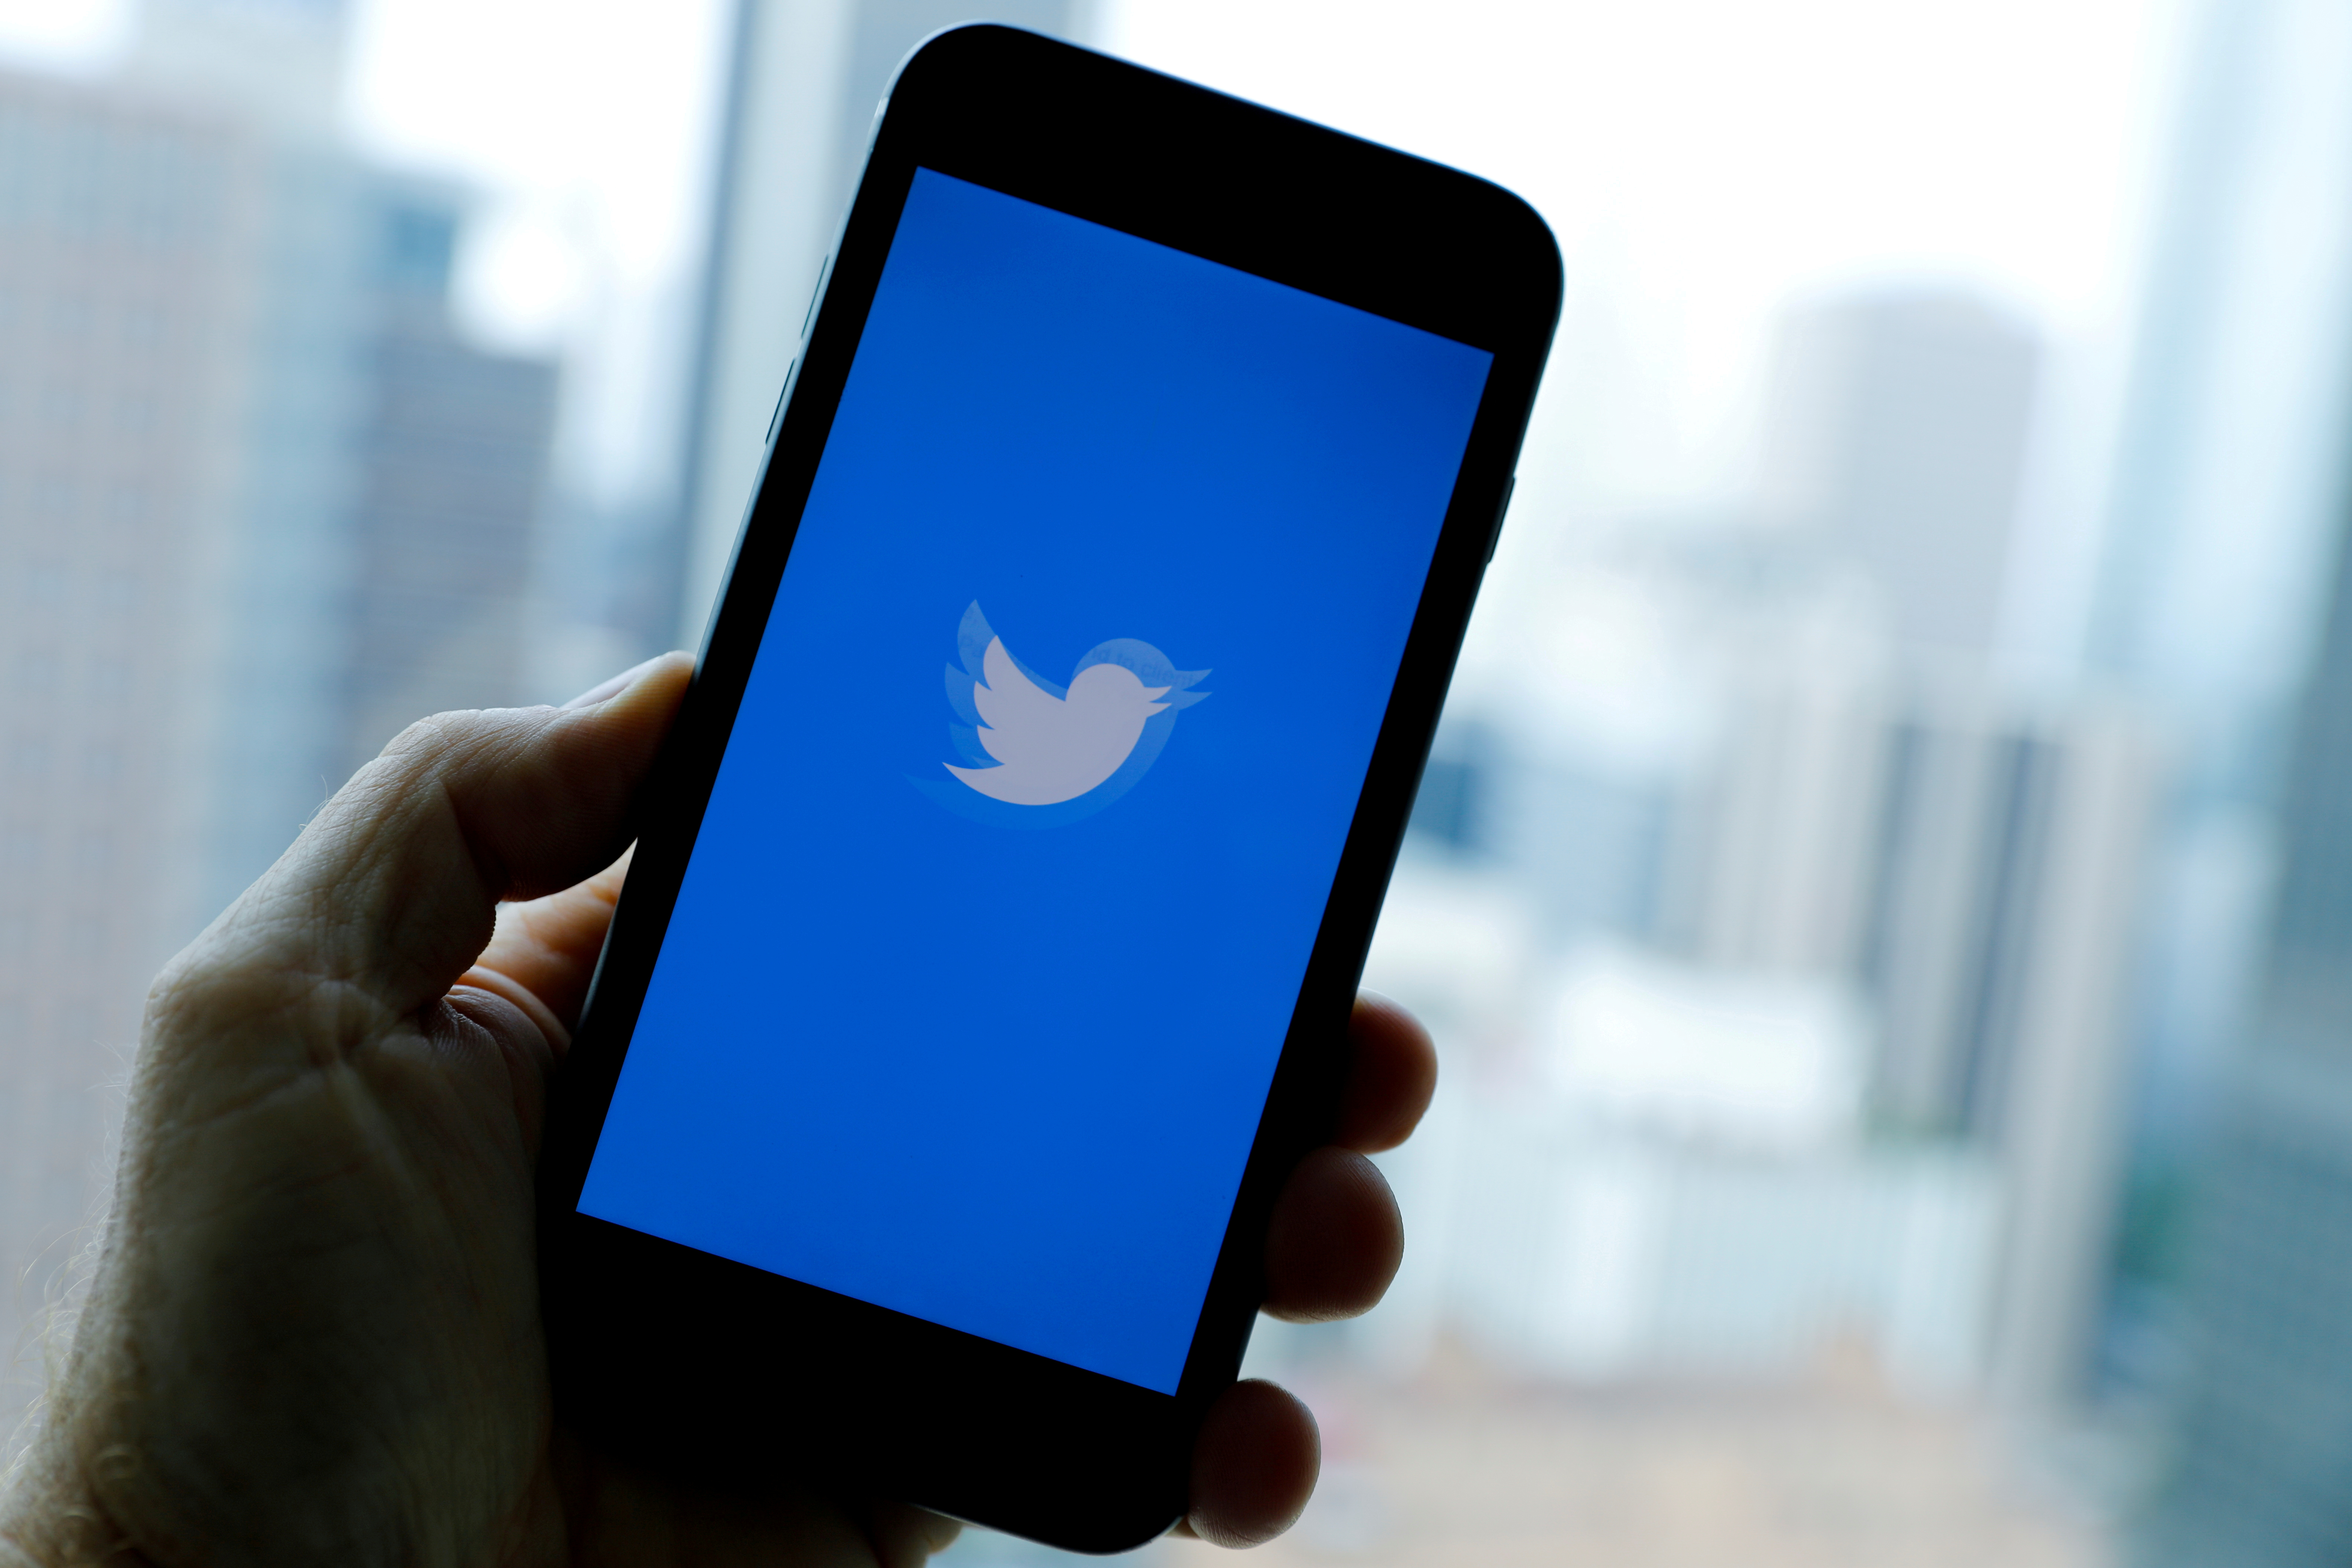 Haine en ligne: la justice française impose à Twitter de partager ses moyens de lutte